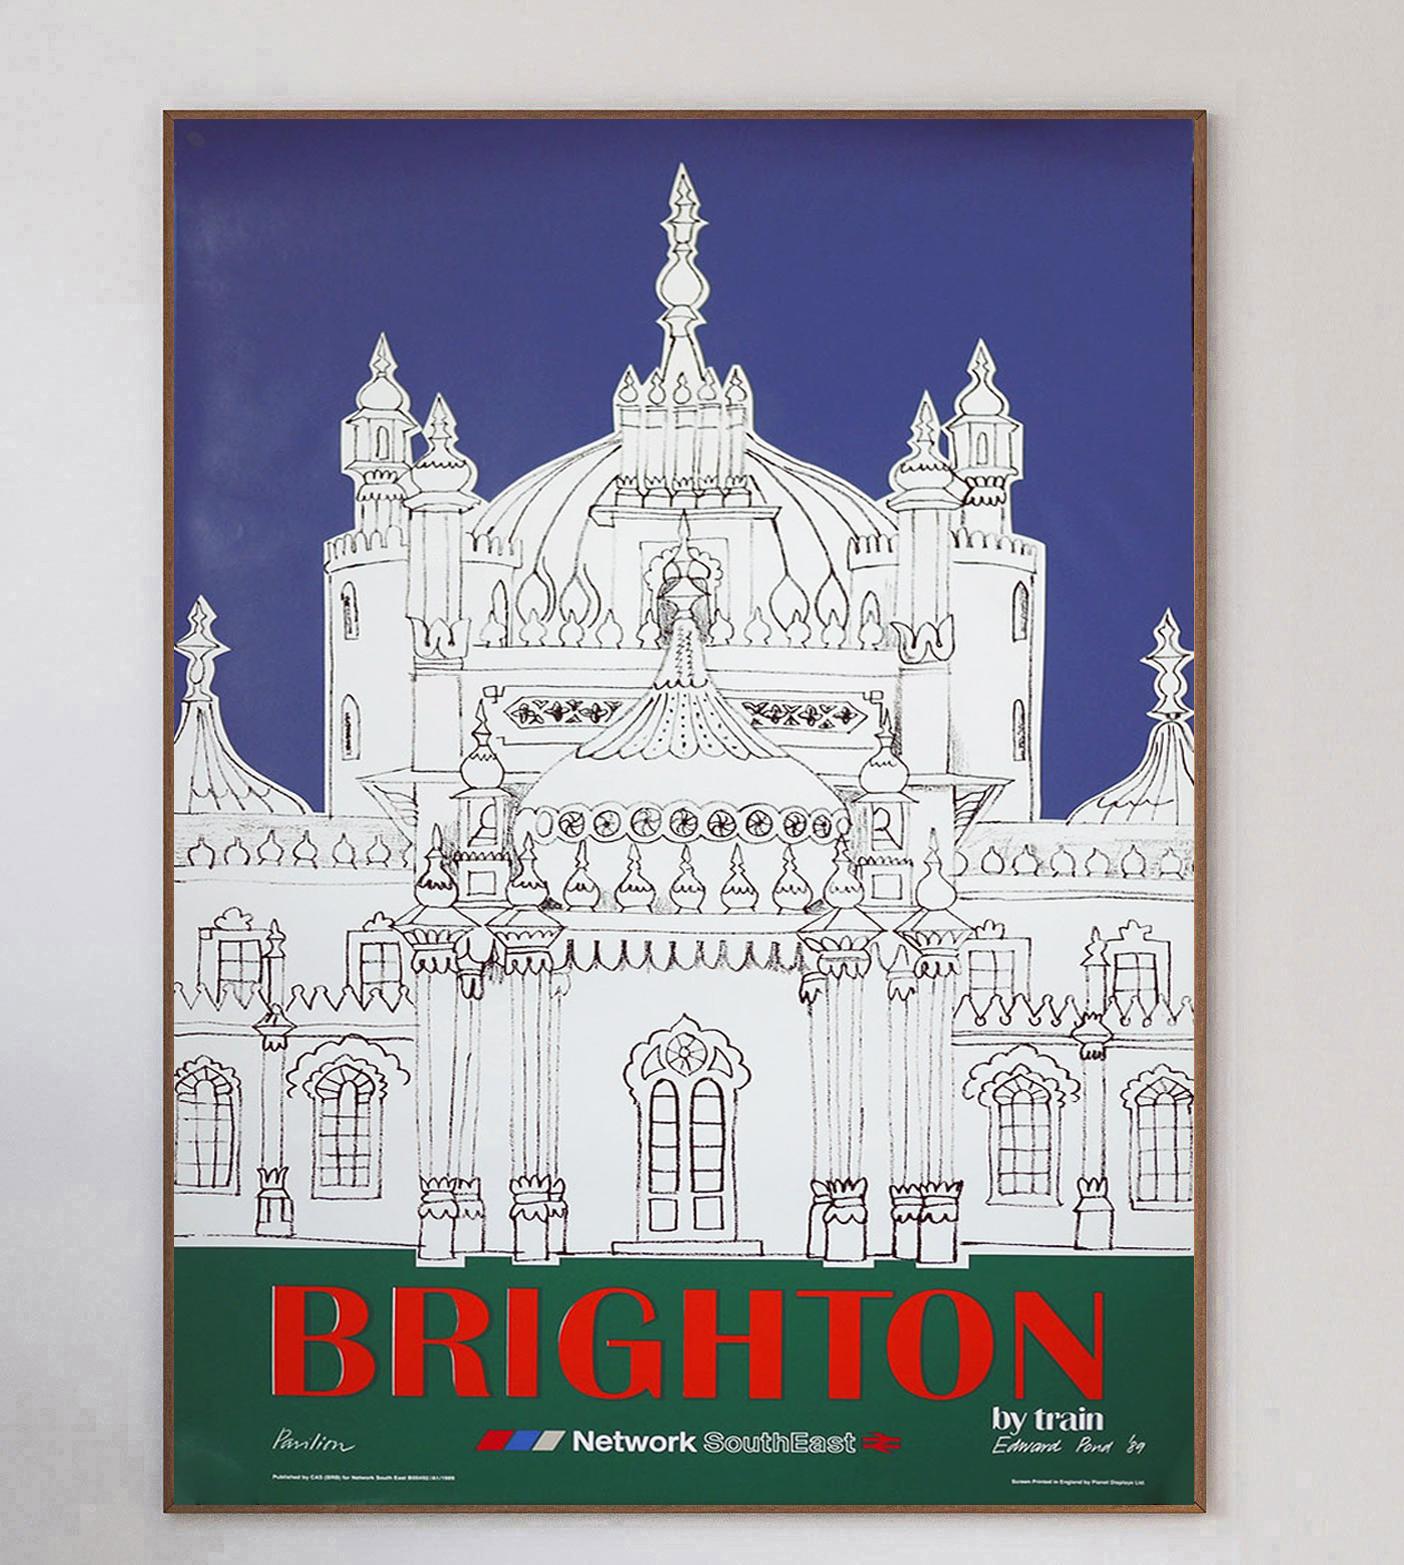 Dieses schöne Plakat wurde 1989 erstellt, um für das neue Netz der British Railways in der Region SouthEast und die Strecken zur Küstenstadt Brighton zu werben. Das lebendige Design zeigt den berühmten Royal Pavilion und wurde von Edward Pond